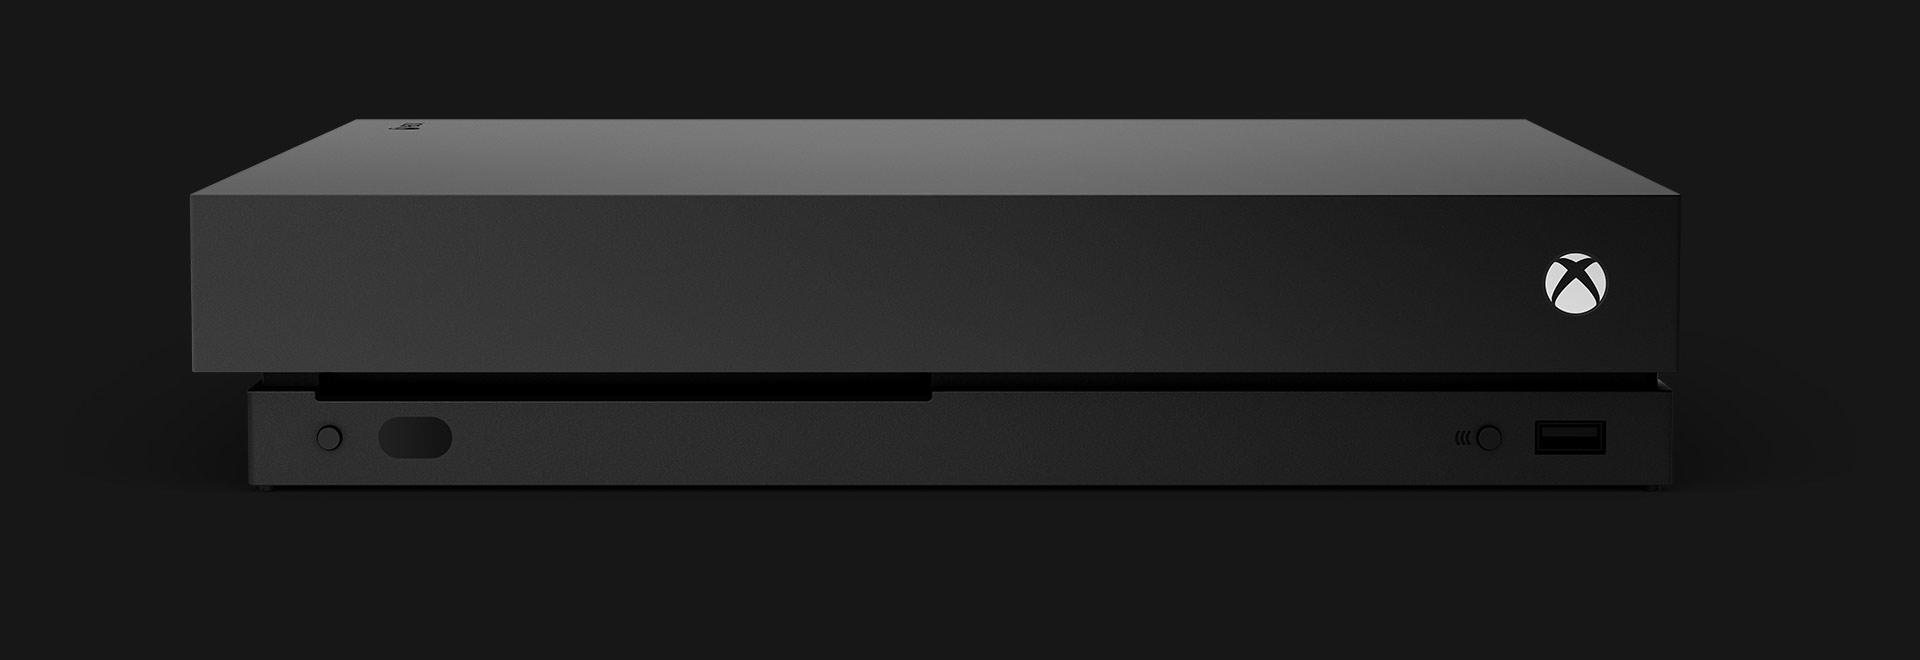 Vista frontal de una consola Xbox One X.